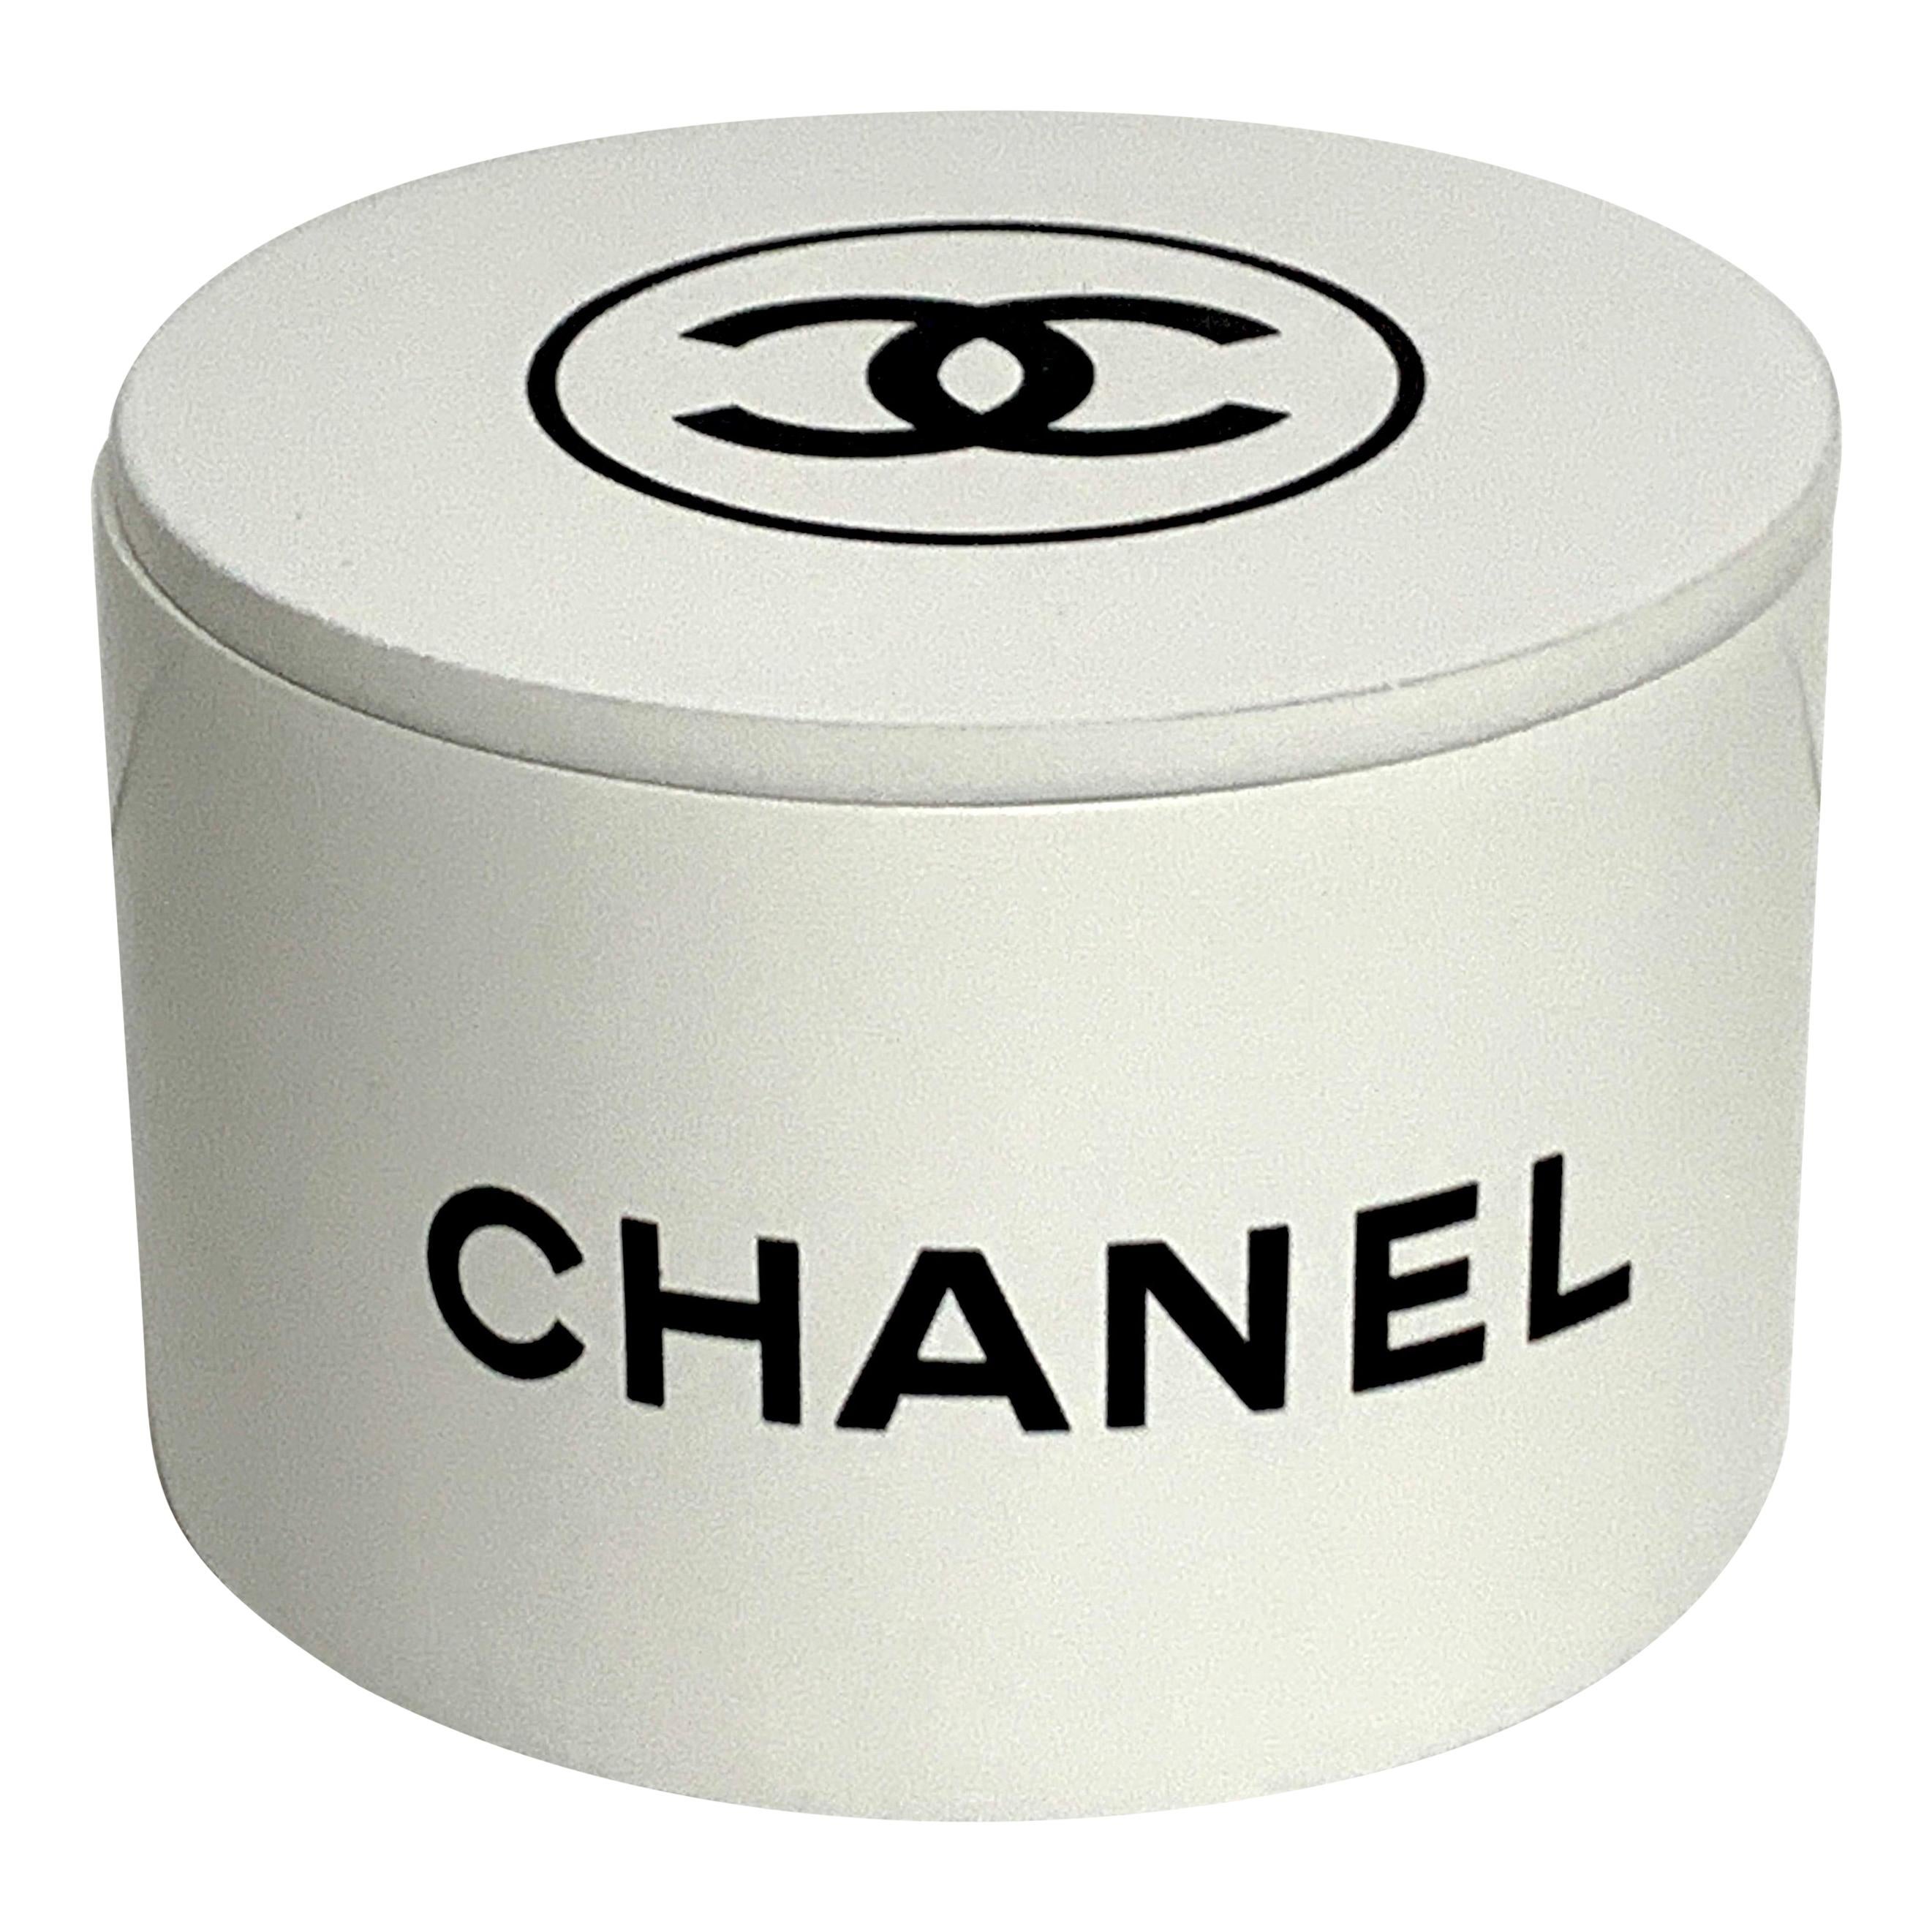 Chanel Store Display Round Dresser Box